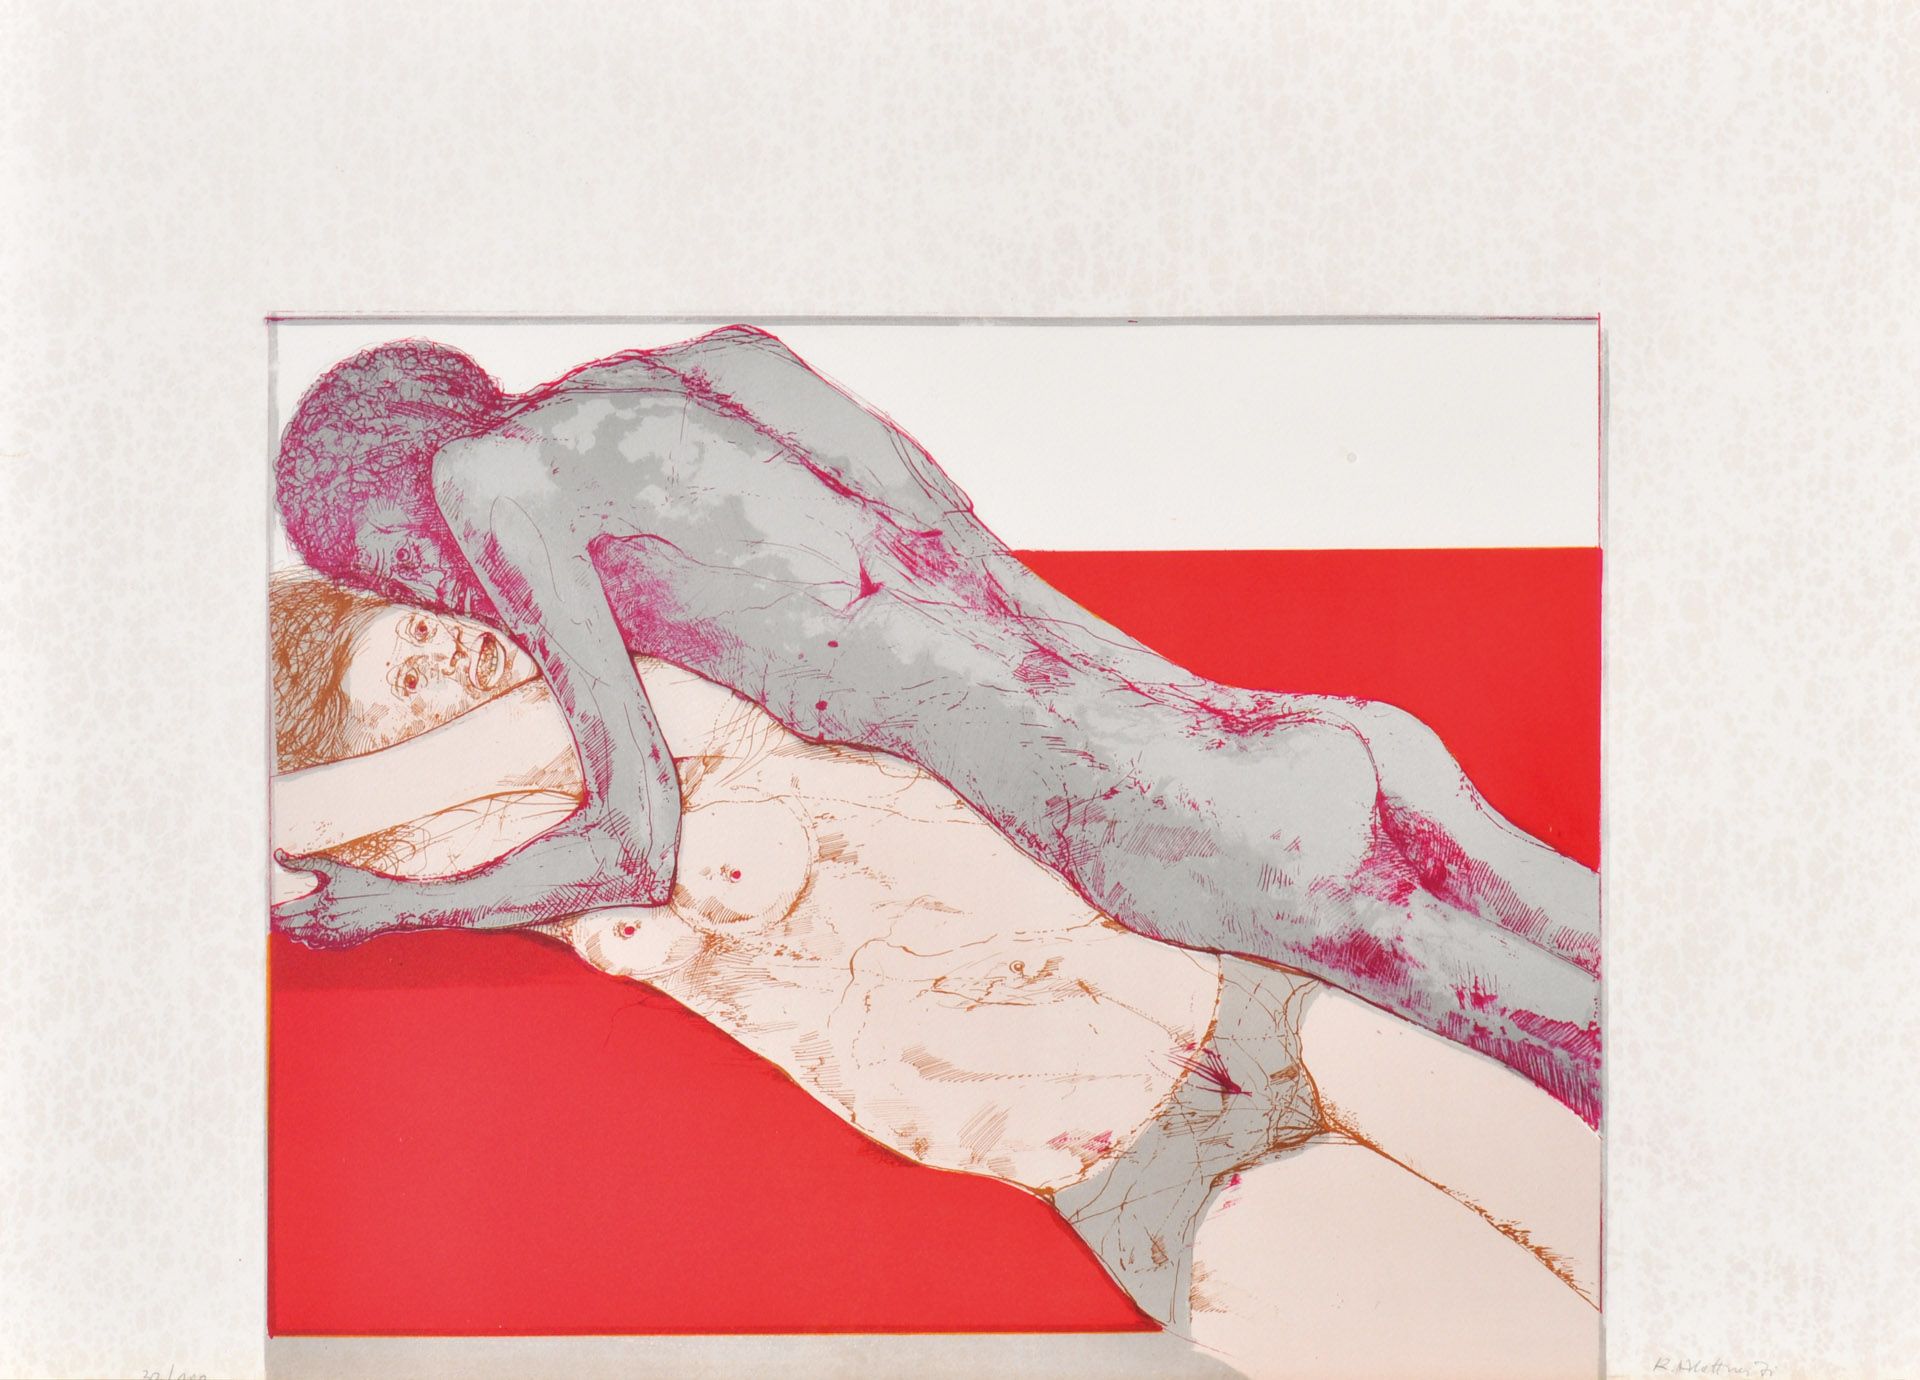 Karl Plattner - Erotica, 1971